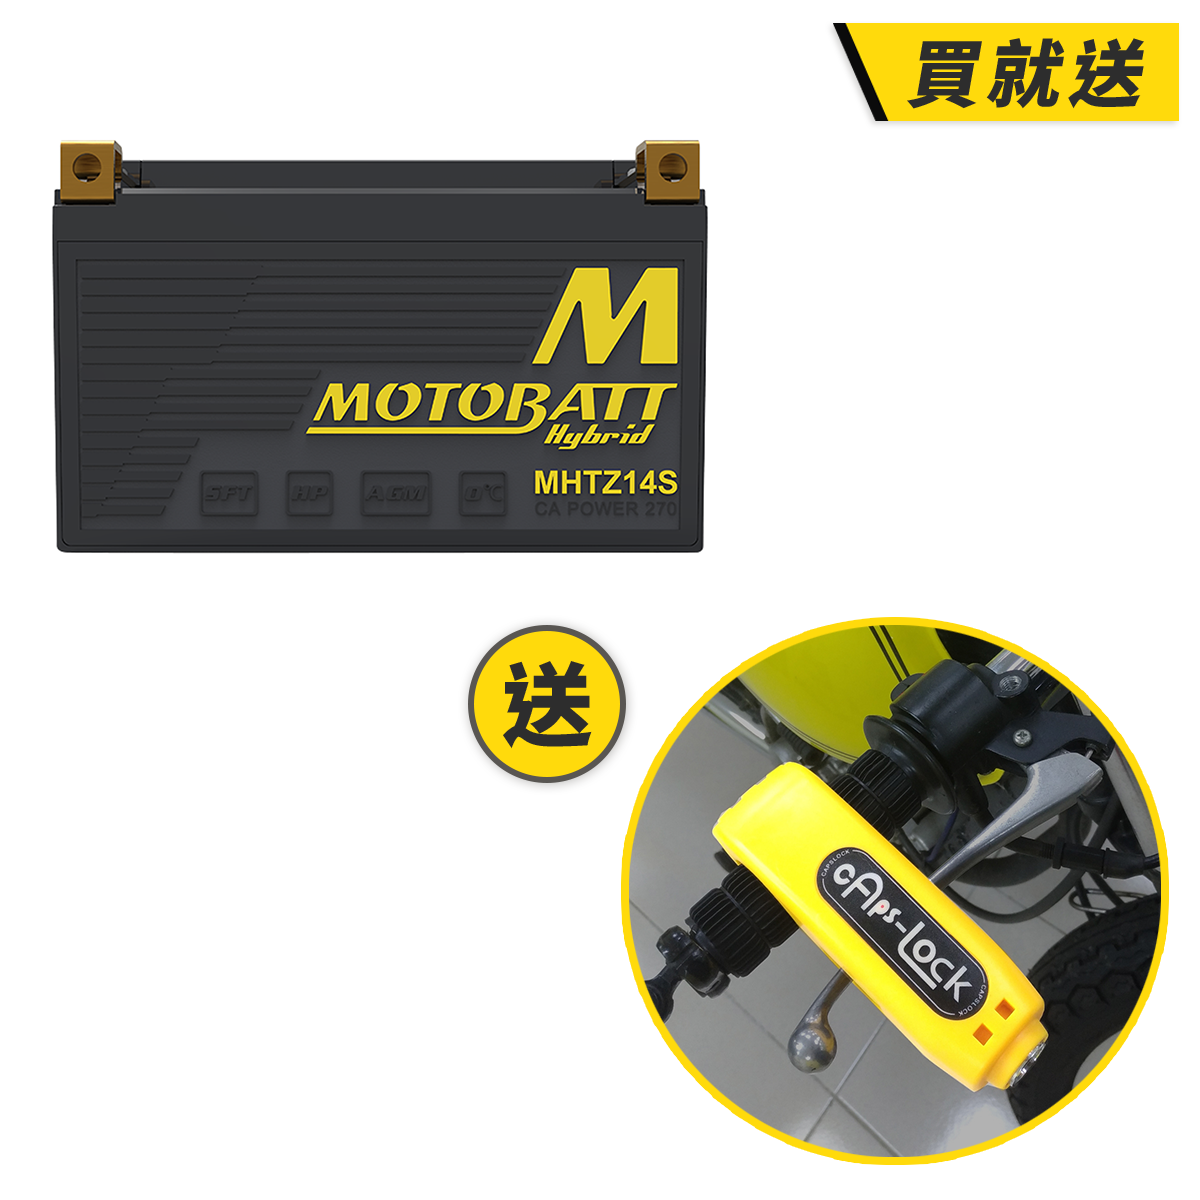 【MOTOBATT】【買就送】鉛鋰複合式電池 MHTZ14S 總代理公司貨